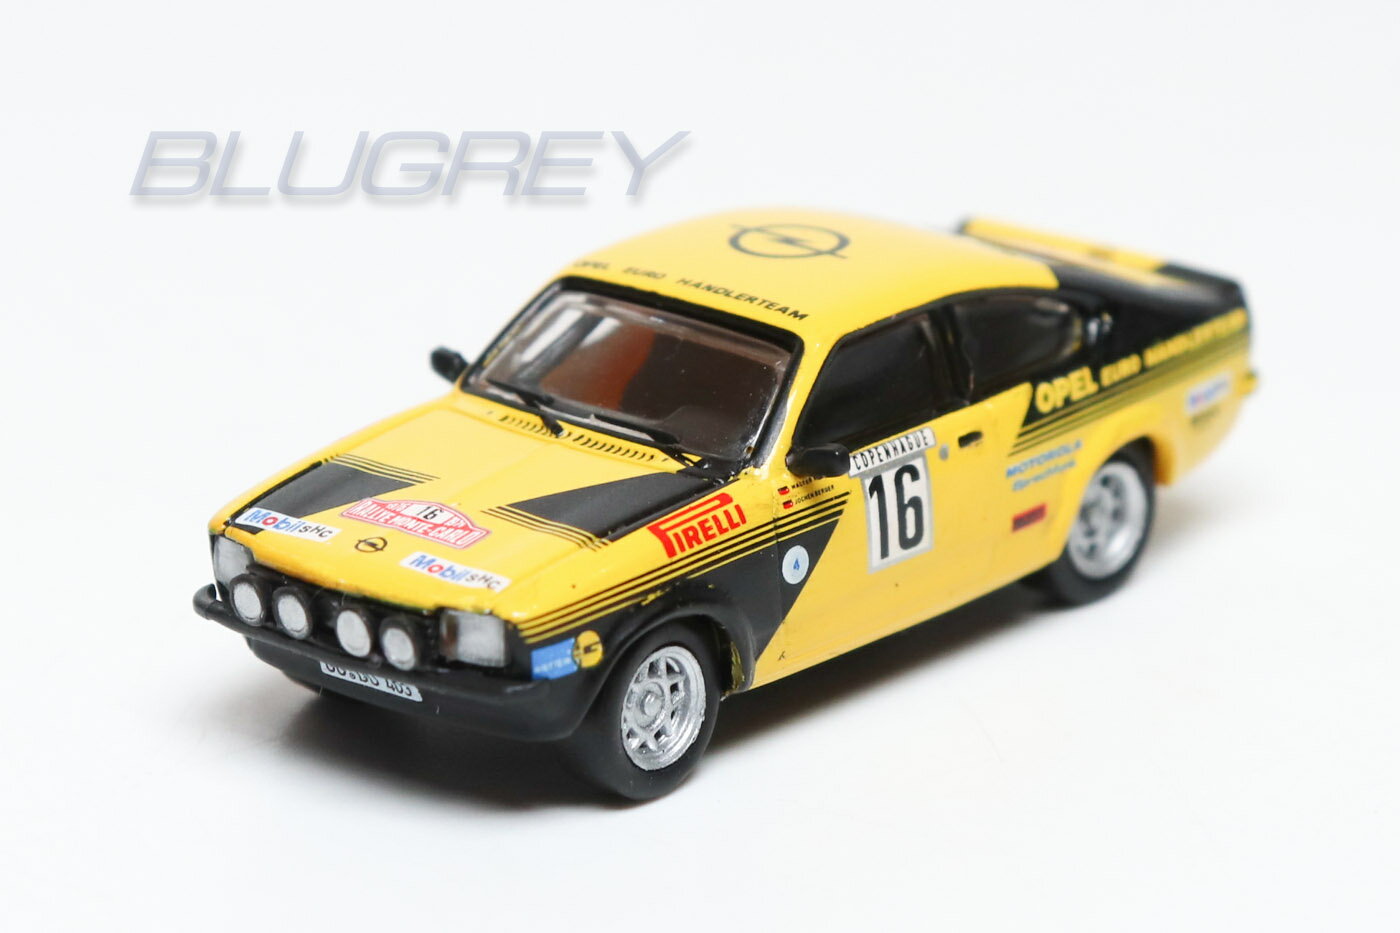 ブレキナ 1/87 オペル カデット C GT/E 1976 モンテカルロラリー #16 BREKINA Opel Kadett Rally ミニカー HOスケール